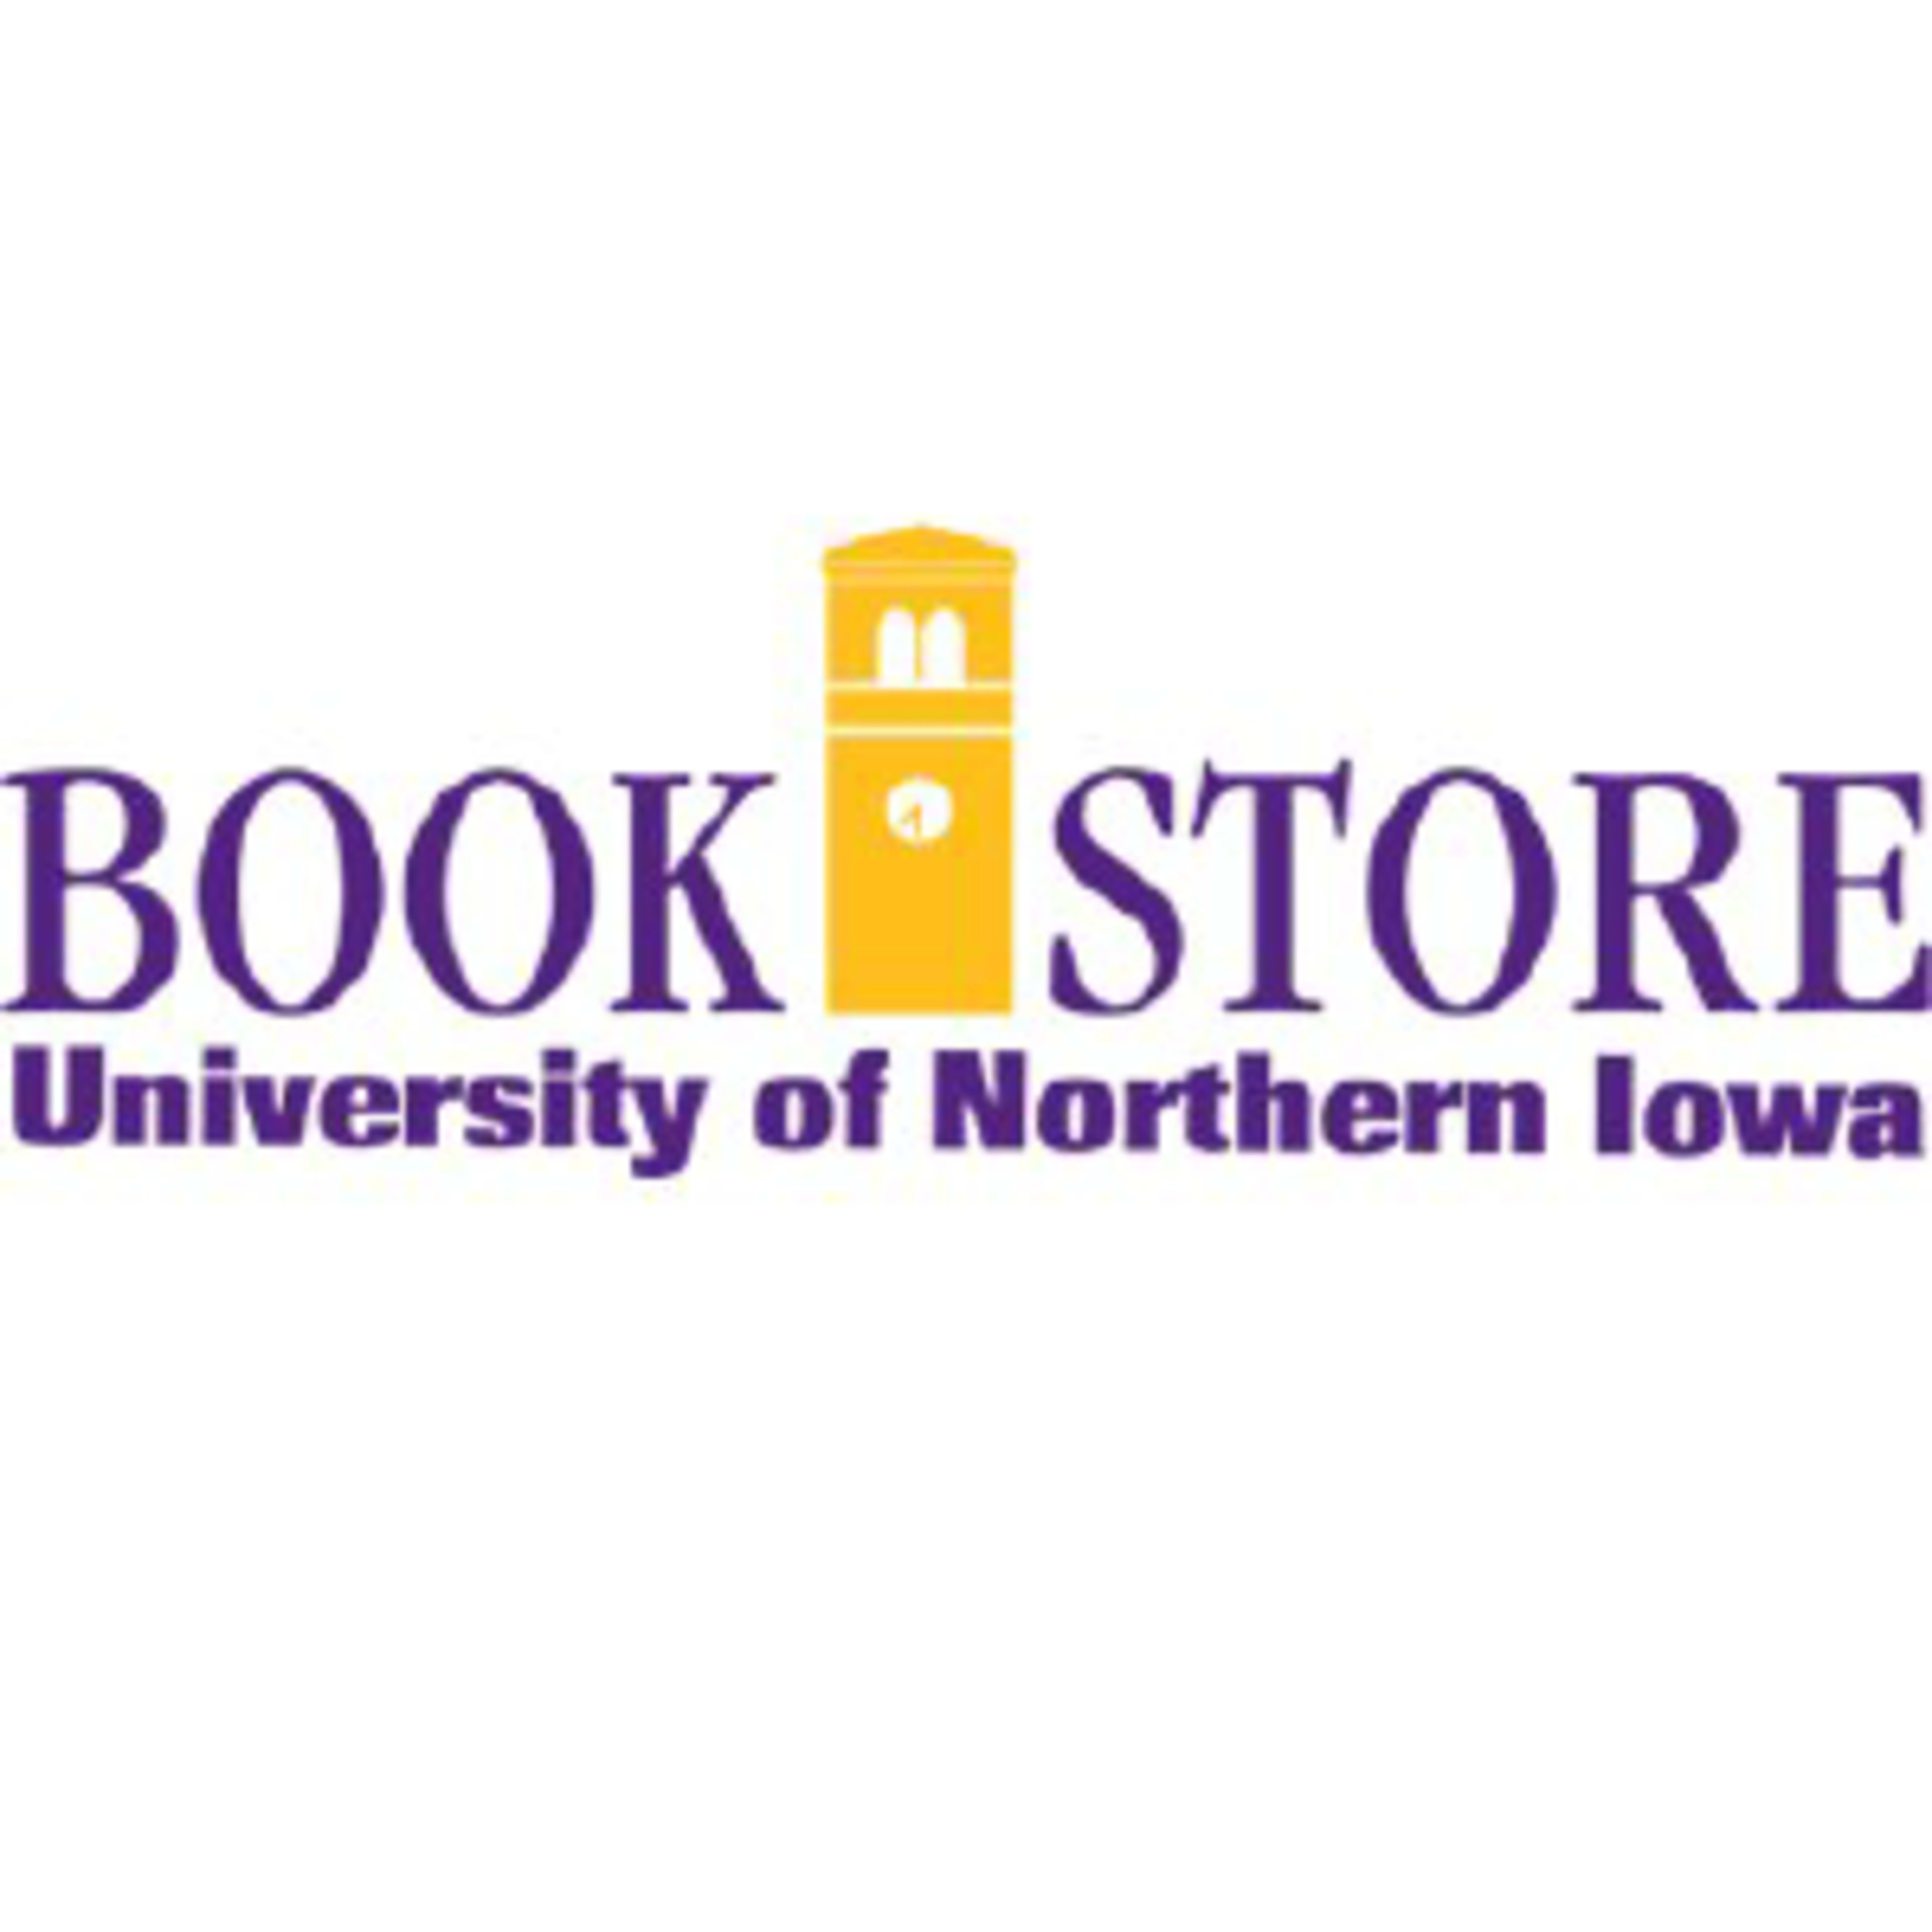 University of Northern Iowa BookstoreCode